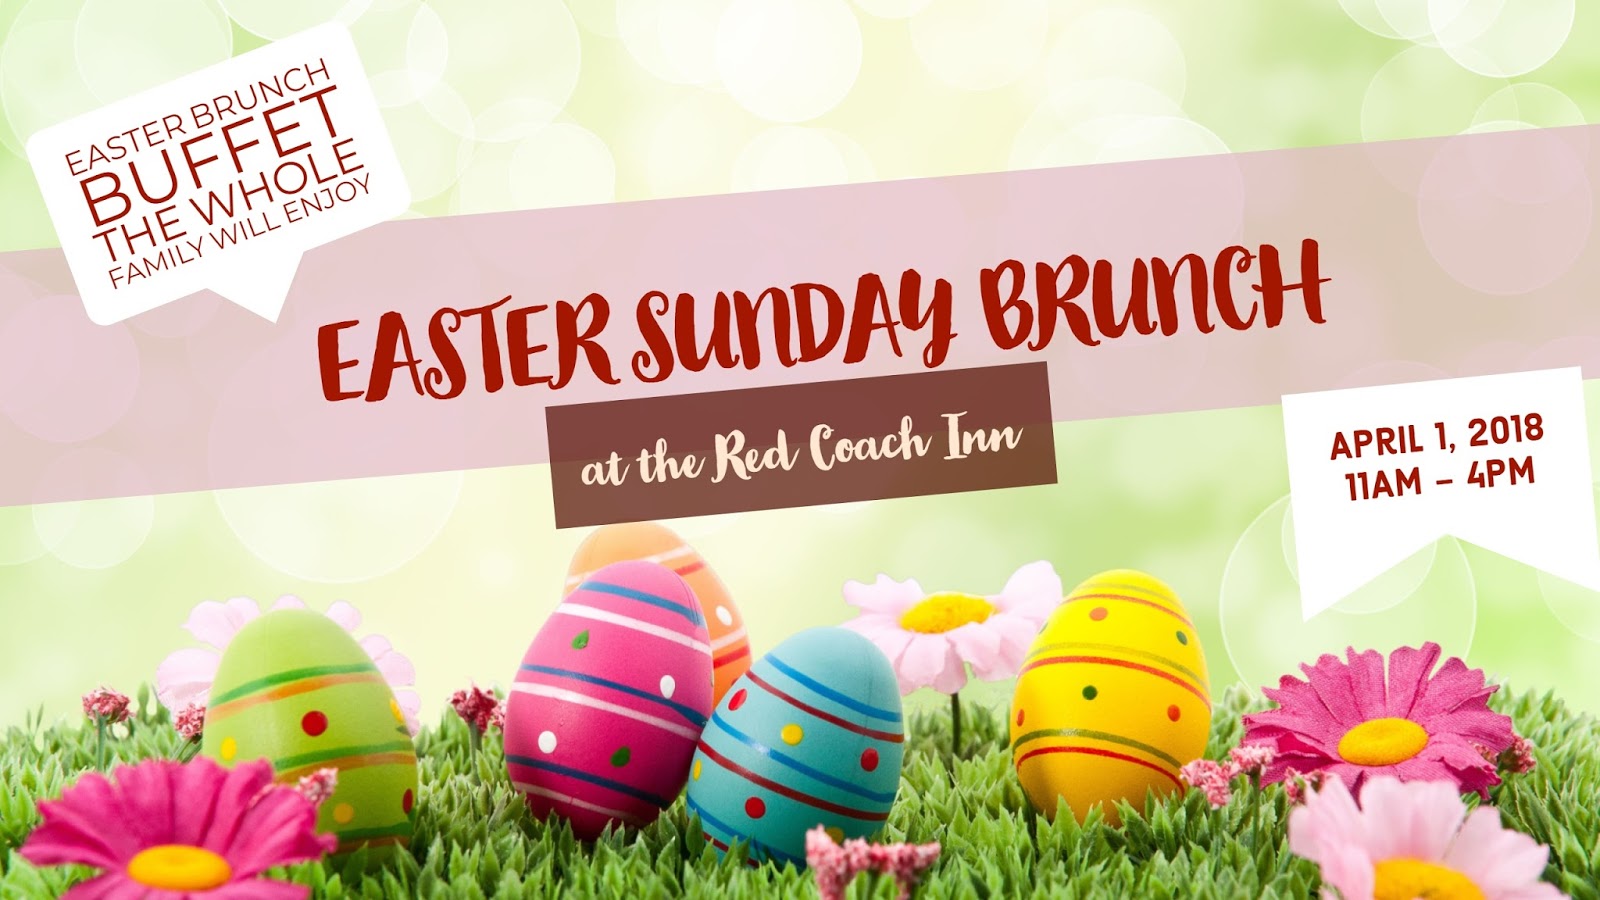 Red Coach Inn: Easter Sunday Brunch